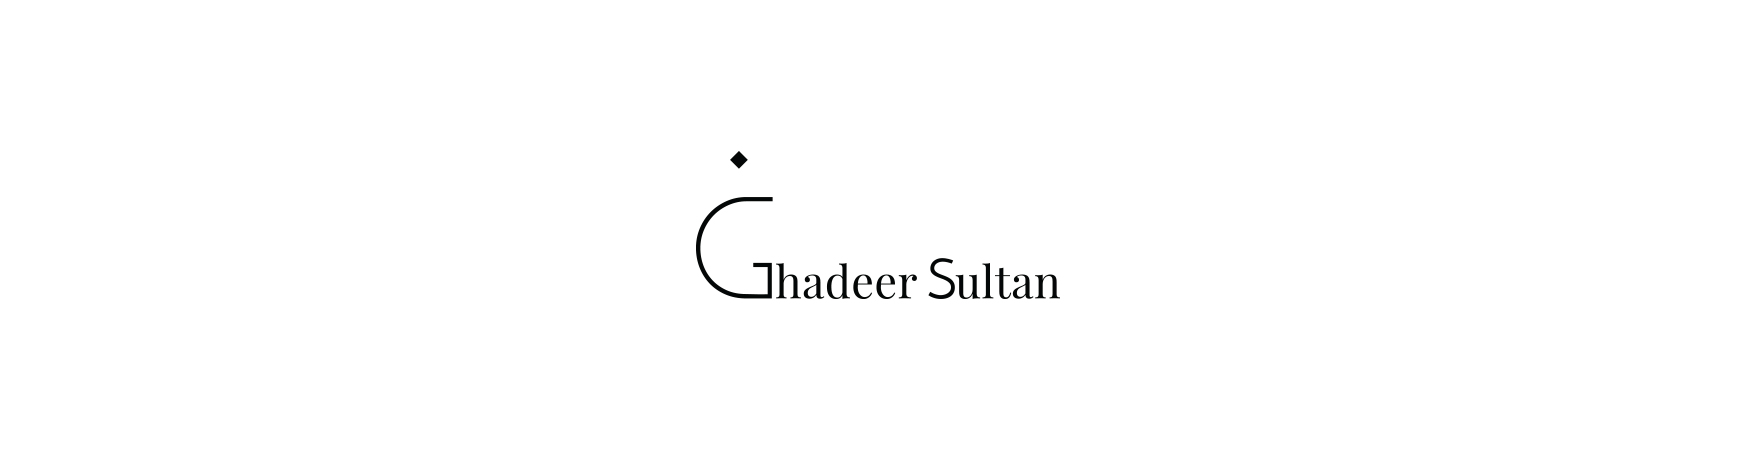 Ghadeer Sultan